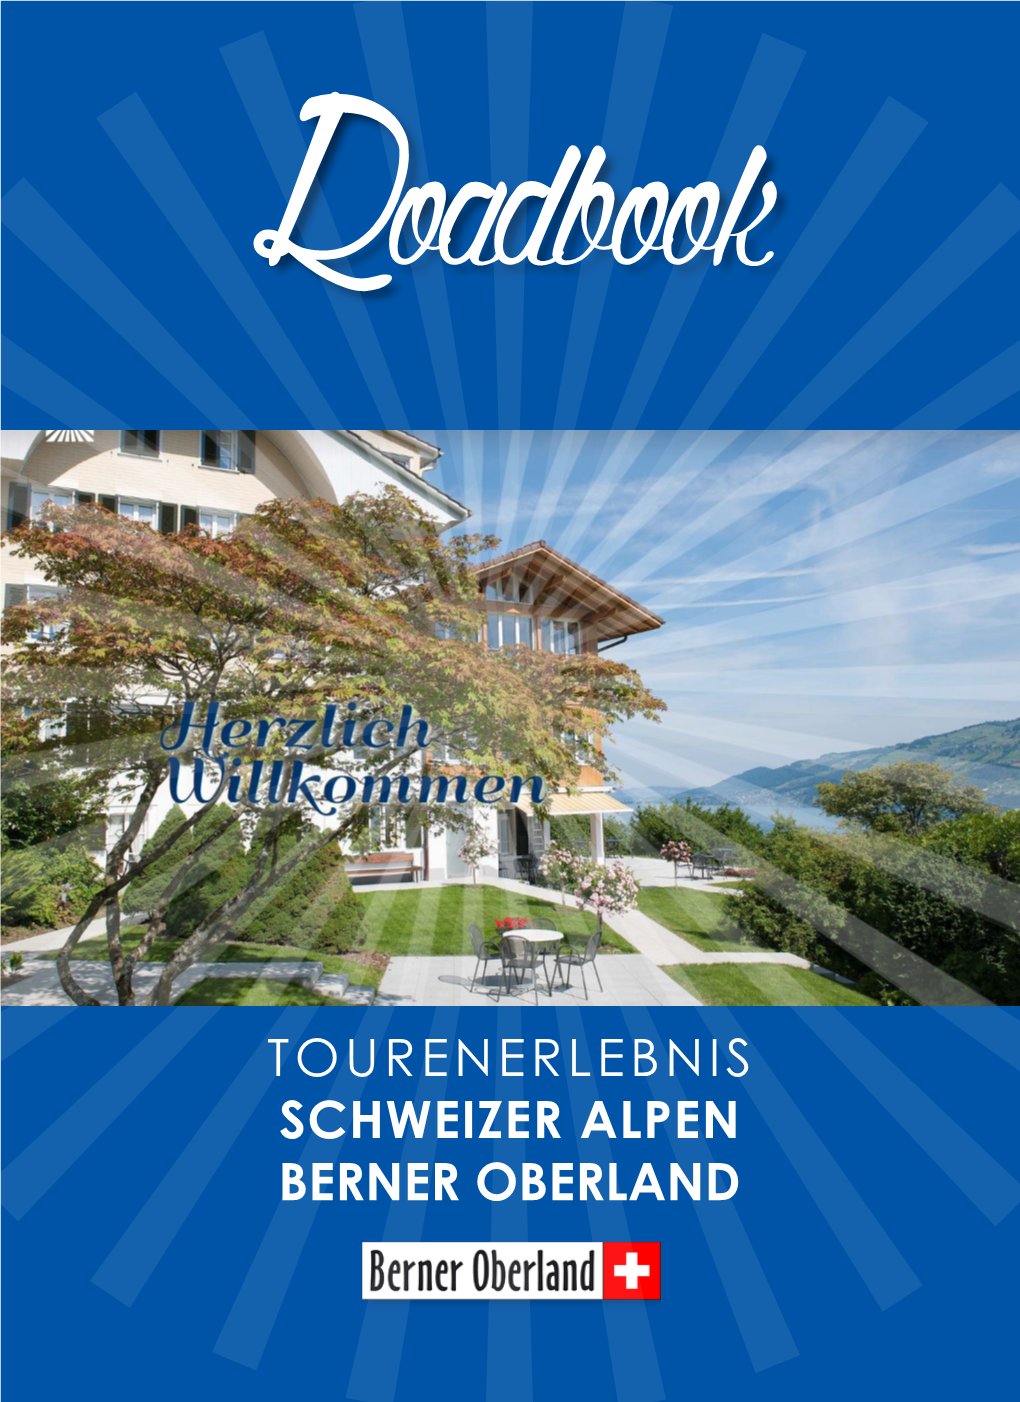 Tourenerlebnis Schweizer Alpen Berner Oberland Tourenübersicht